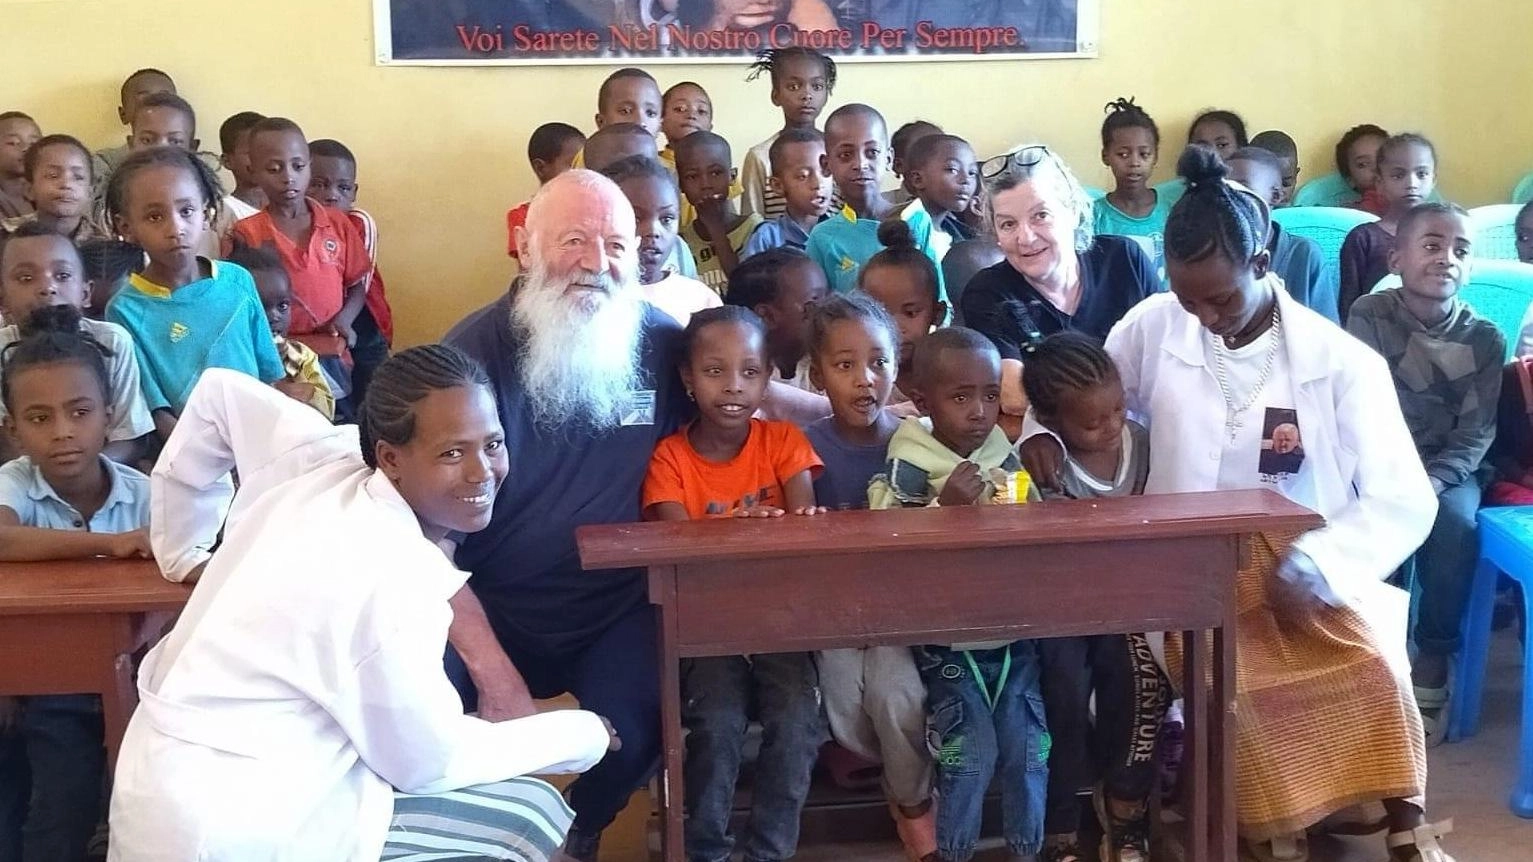 La missione di Vincenza Costantini: "Soldi per la scuola e medicine, al fianco degli ultimi dell’Etiopia"